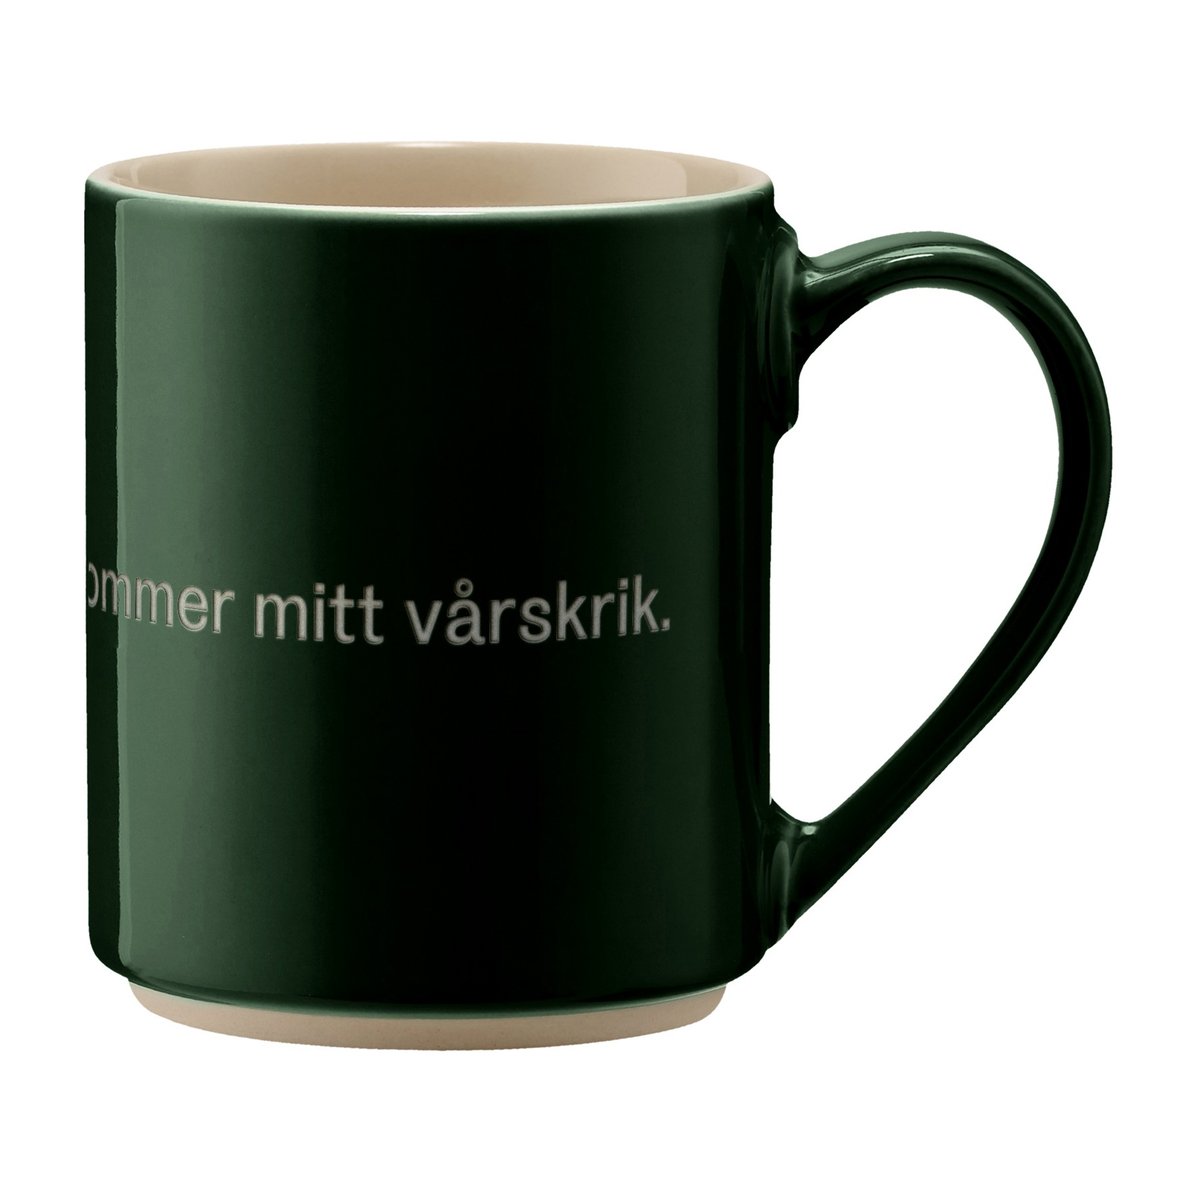 design house stockholm mug astrid lindgren, håll för örona texte en suédois